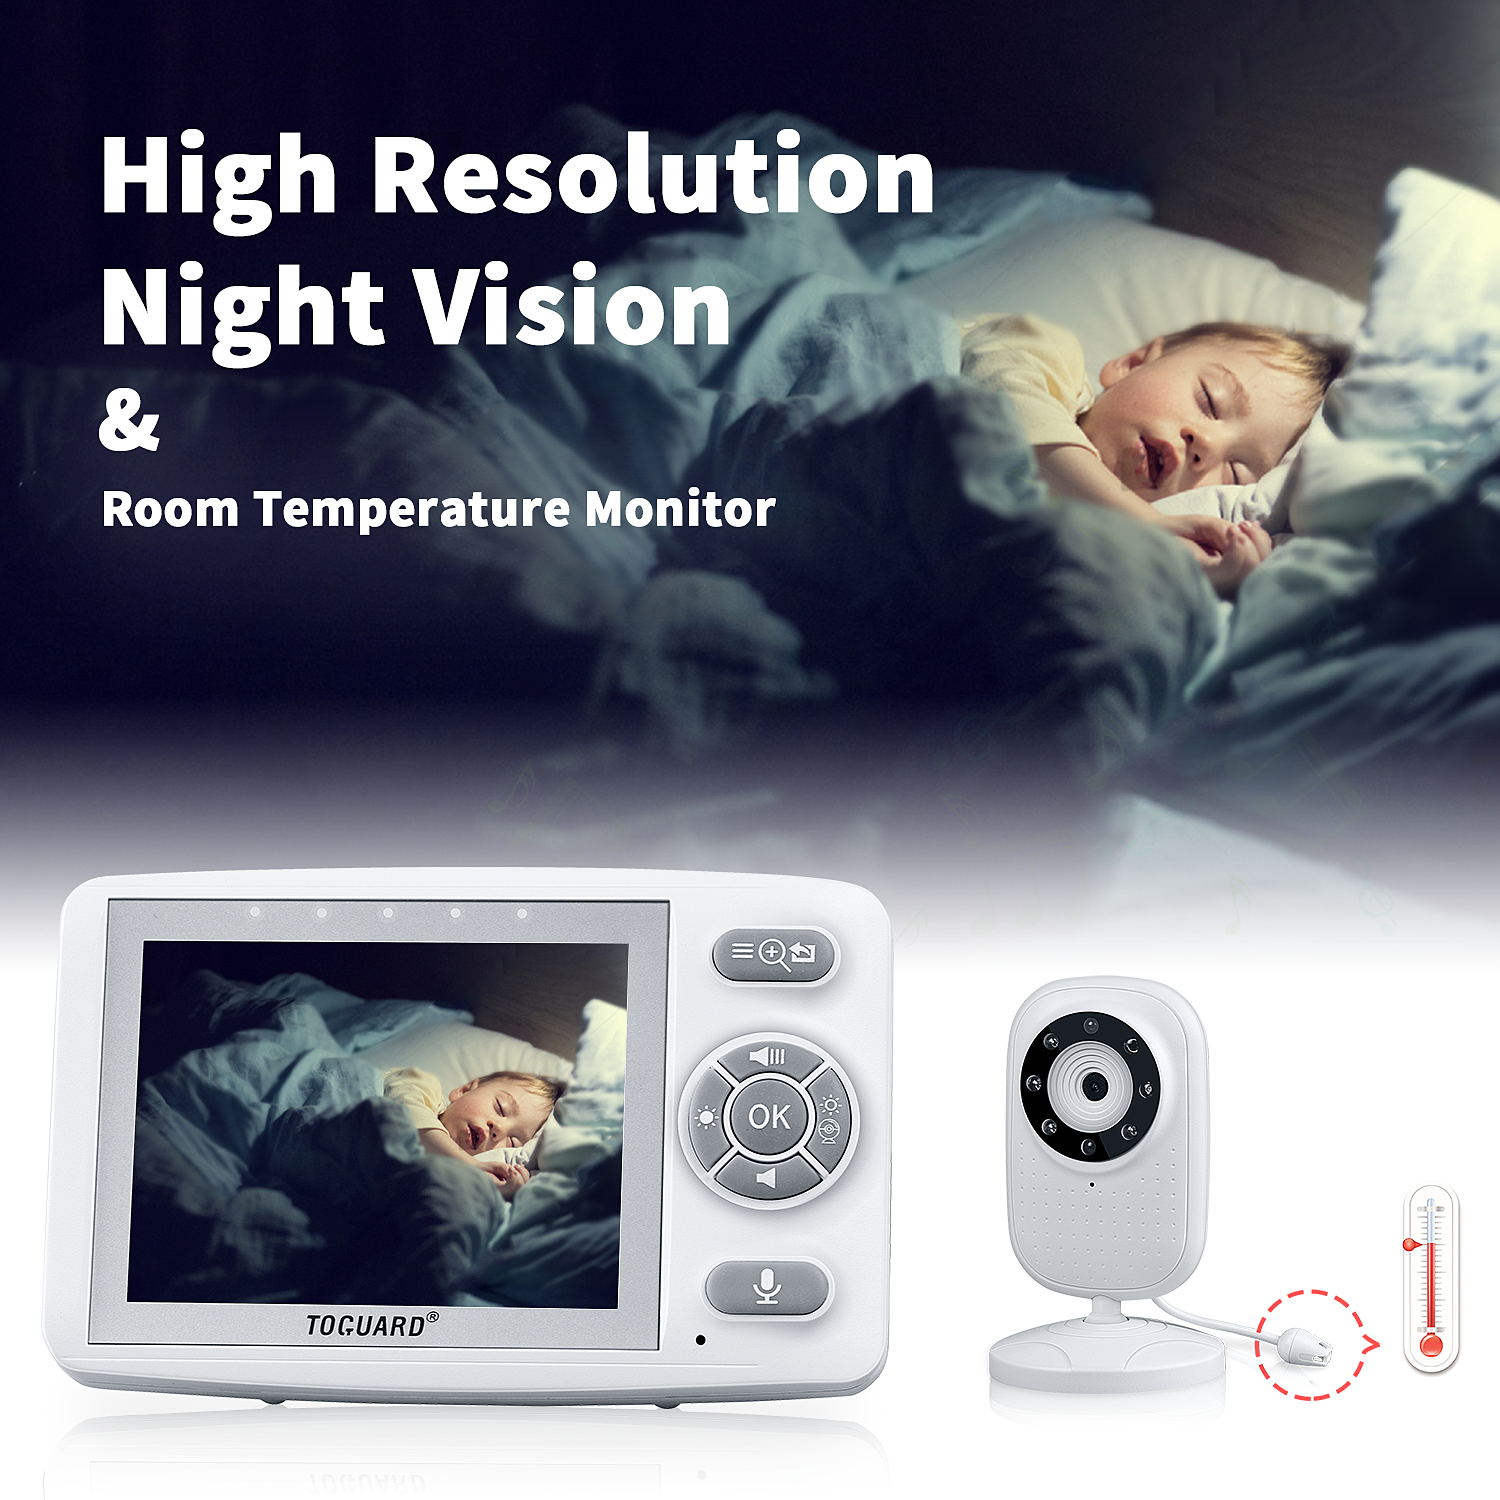 Toguard AM30 Video-Babyphone mit Kamera, 3,5-Zoll-Bildschirm, kabellose Übertragung von Säuglingen